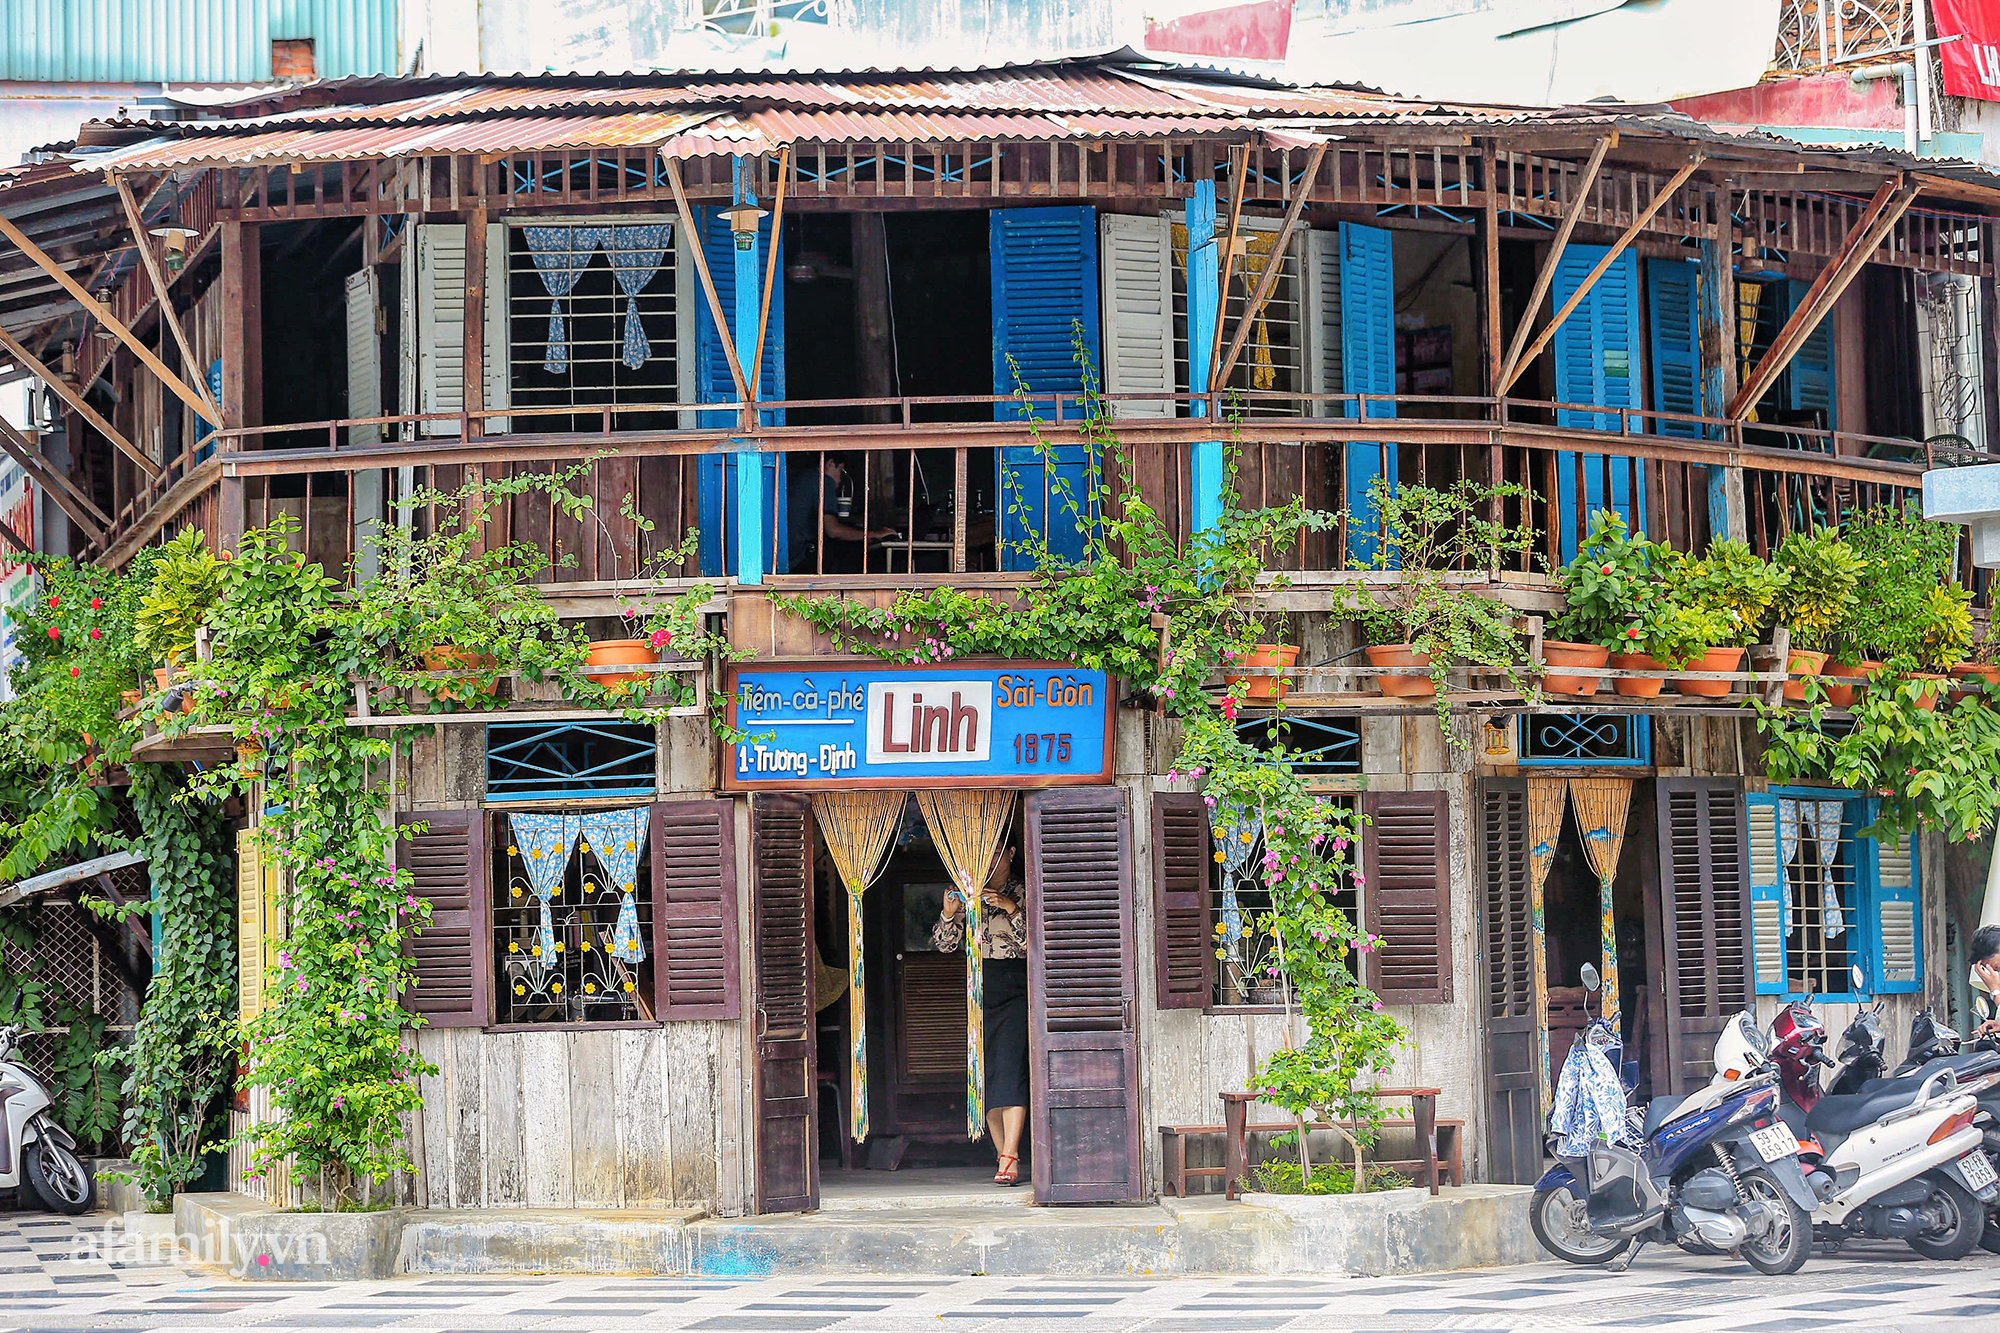 Giữa giao lộ đắt giá quận 1 bất thình lình xuất hiện quán cà phê đậm chất Sài Gòn xưa, hiện là nơi hot đến không tưởng, được check in khắp mạng xã hội - Ảnh 5.